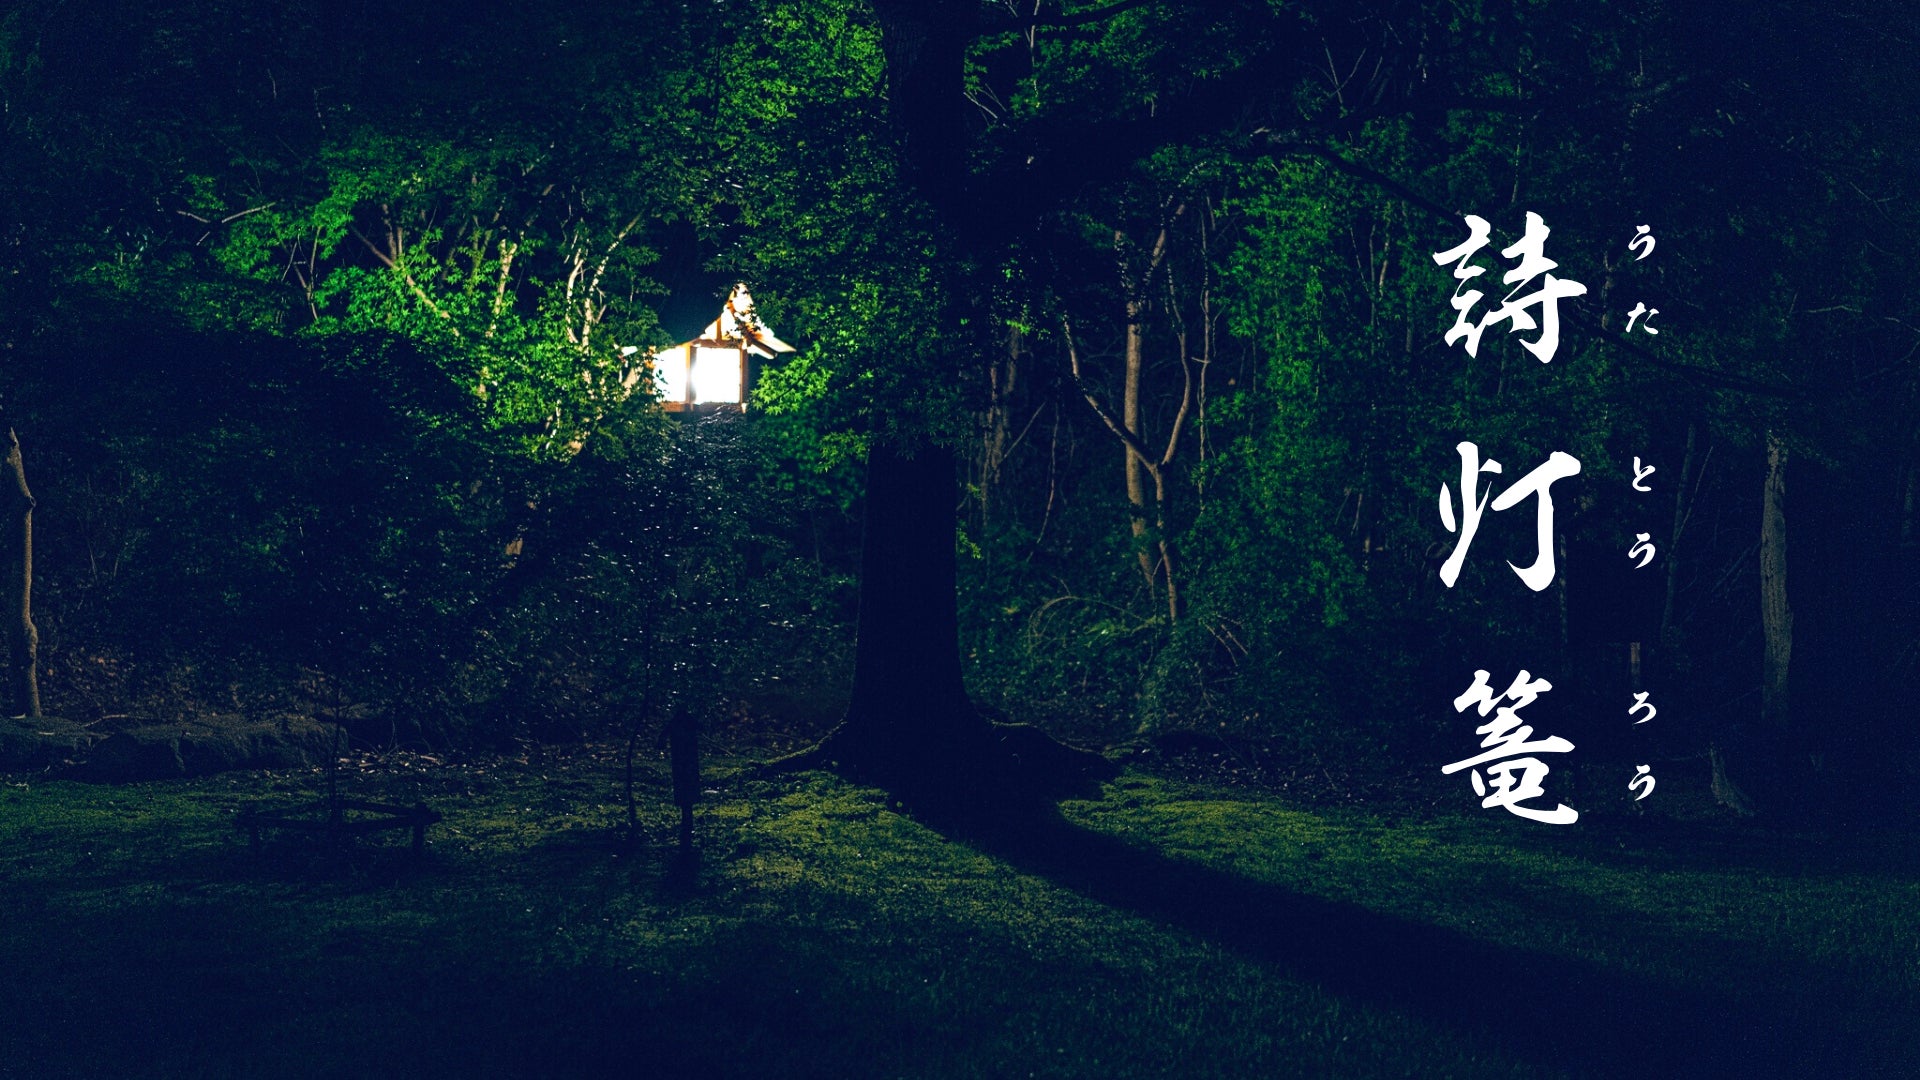 愛知県にて、森の自然空間 × 日本文化・和楽器によるデジタルデトックスな野外ライブを開催！【株式会社遊覧座】